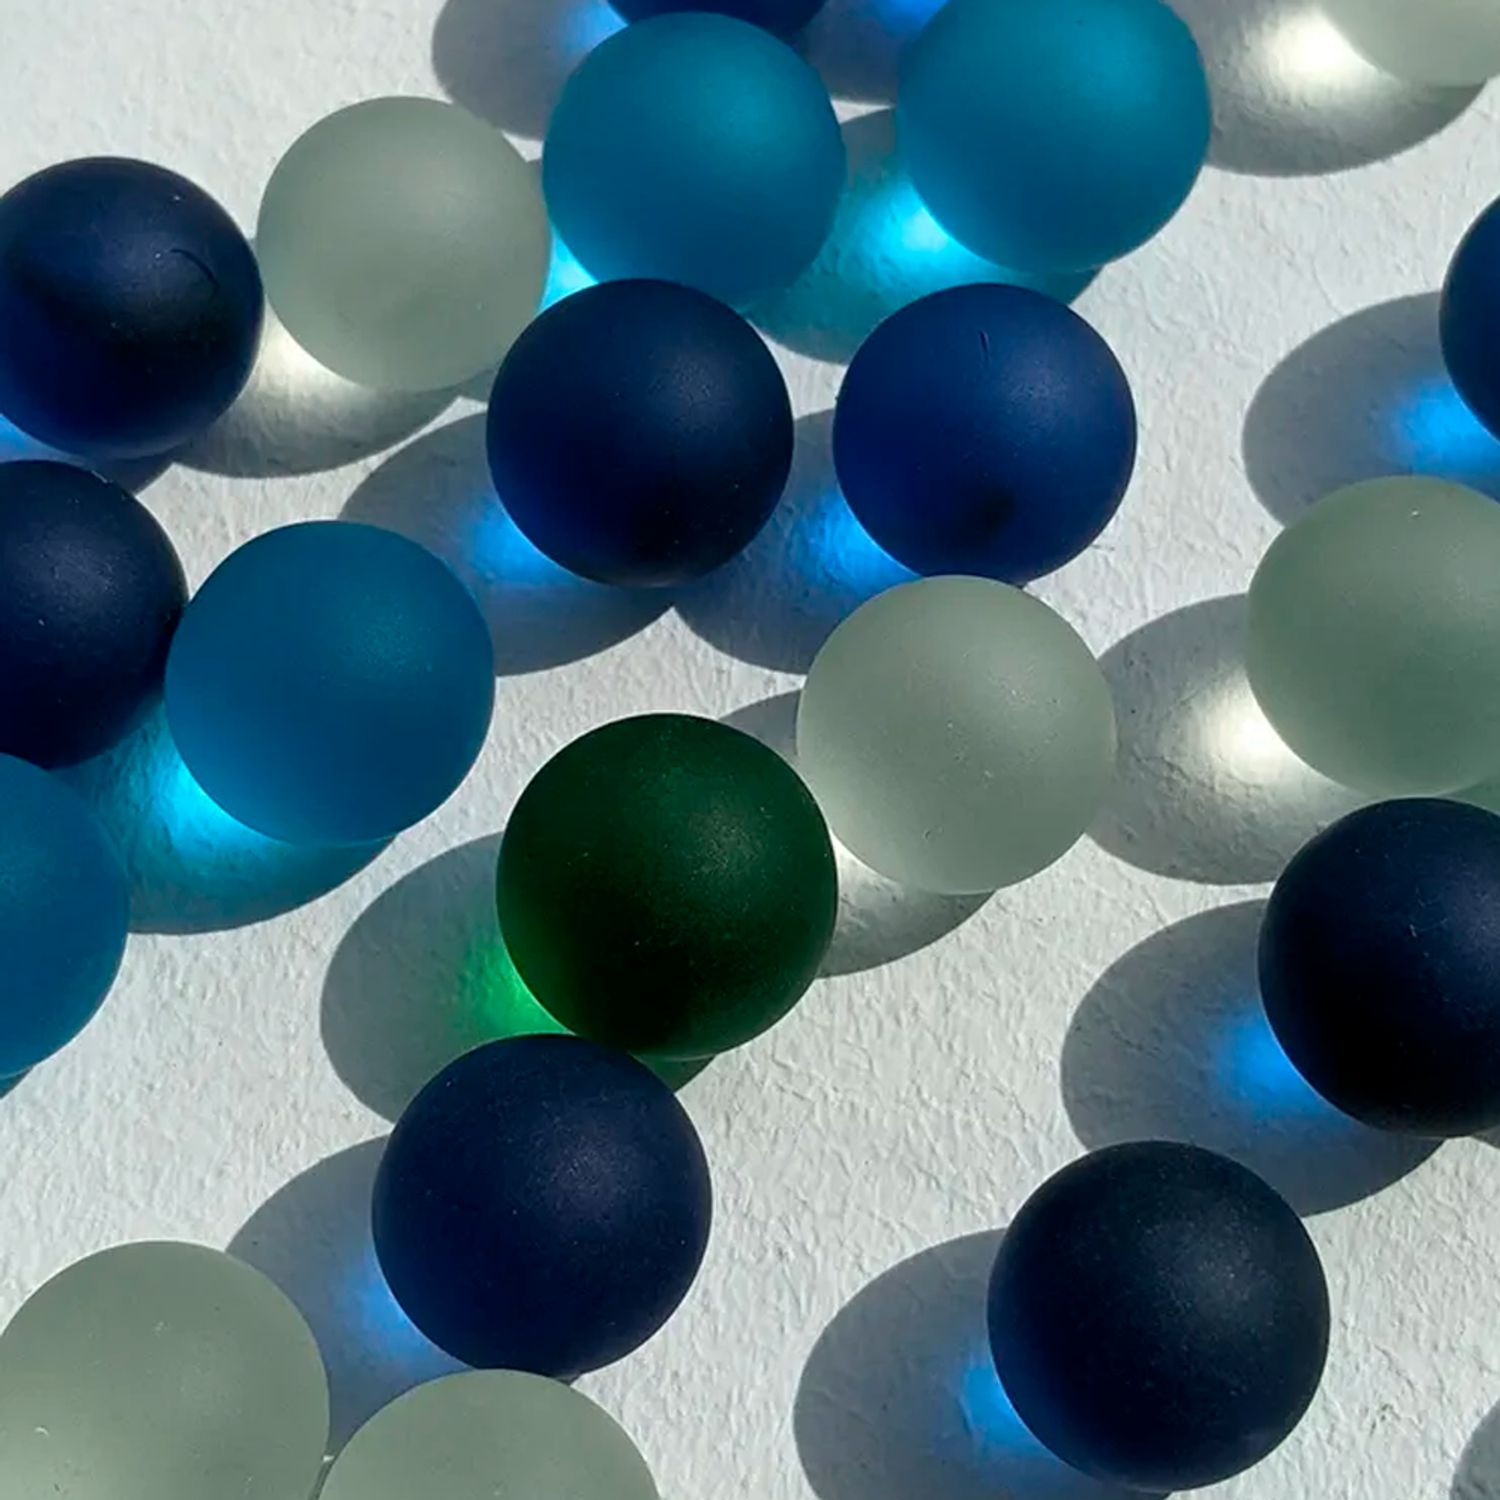 Стеклянные шарики Riota камешки марблс грунт стеклянный Матовые прозрачные Голубые синие белые зеленые 16 мм 30 шт - фото 2